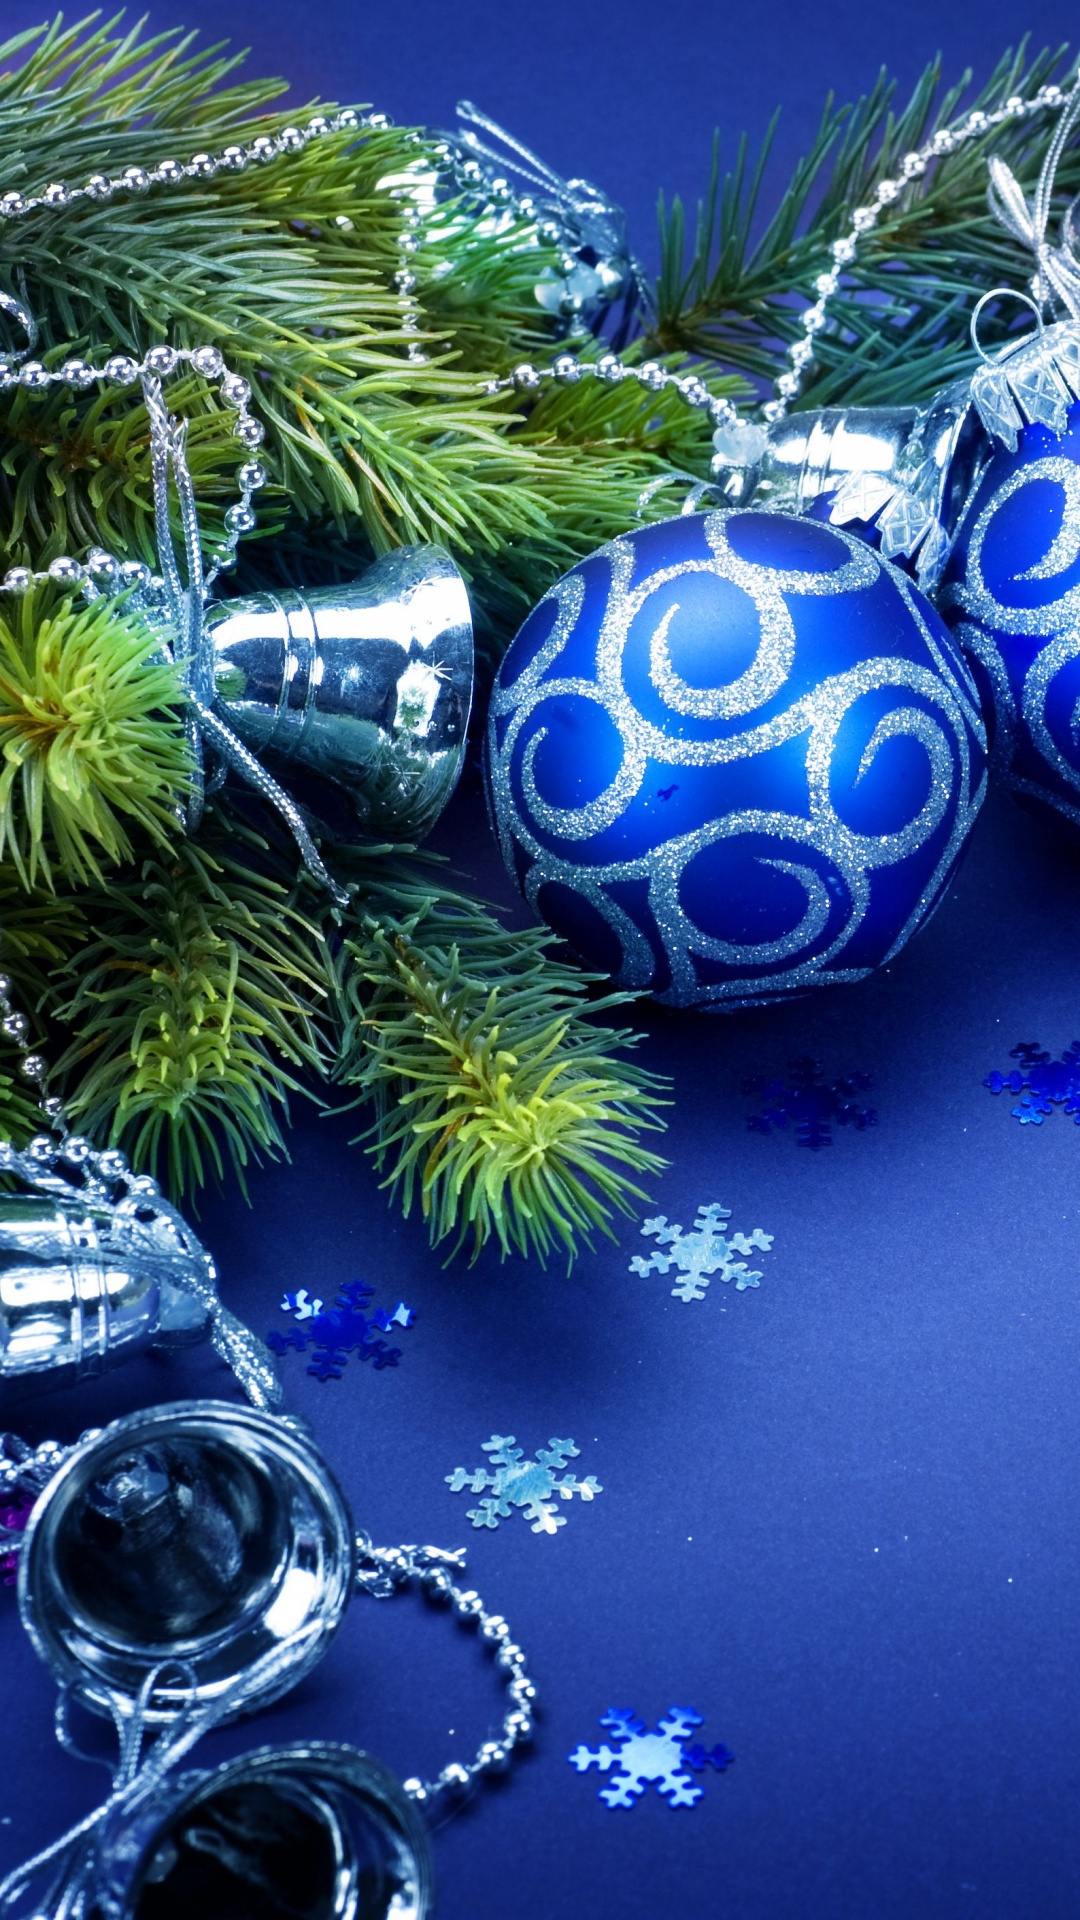 Weihnachten, Christmas Ornament, Blau, Weihnachtsdekoration, Baum. Wallpaper in 1080x1920 Resolution